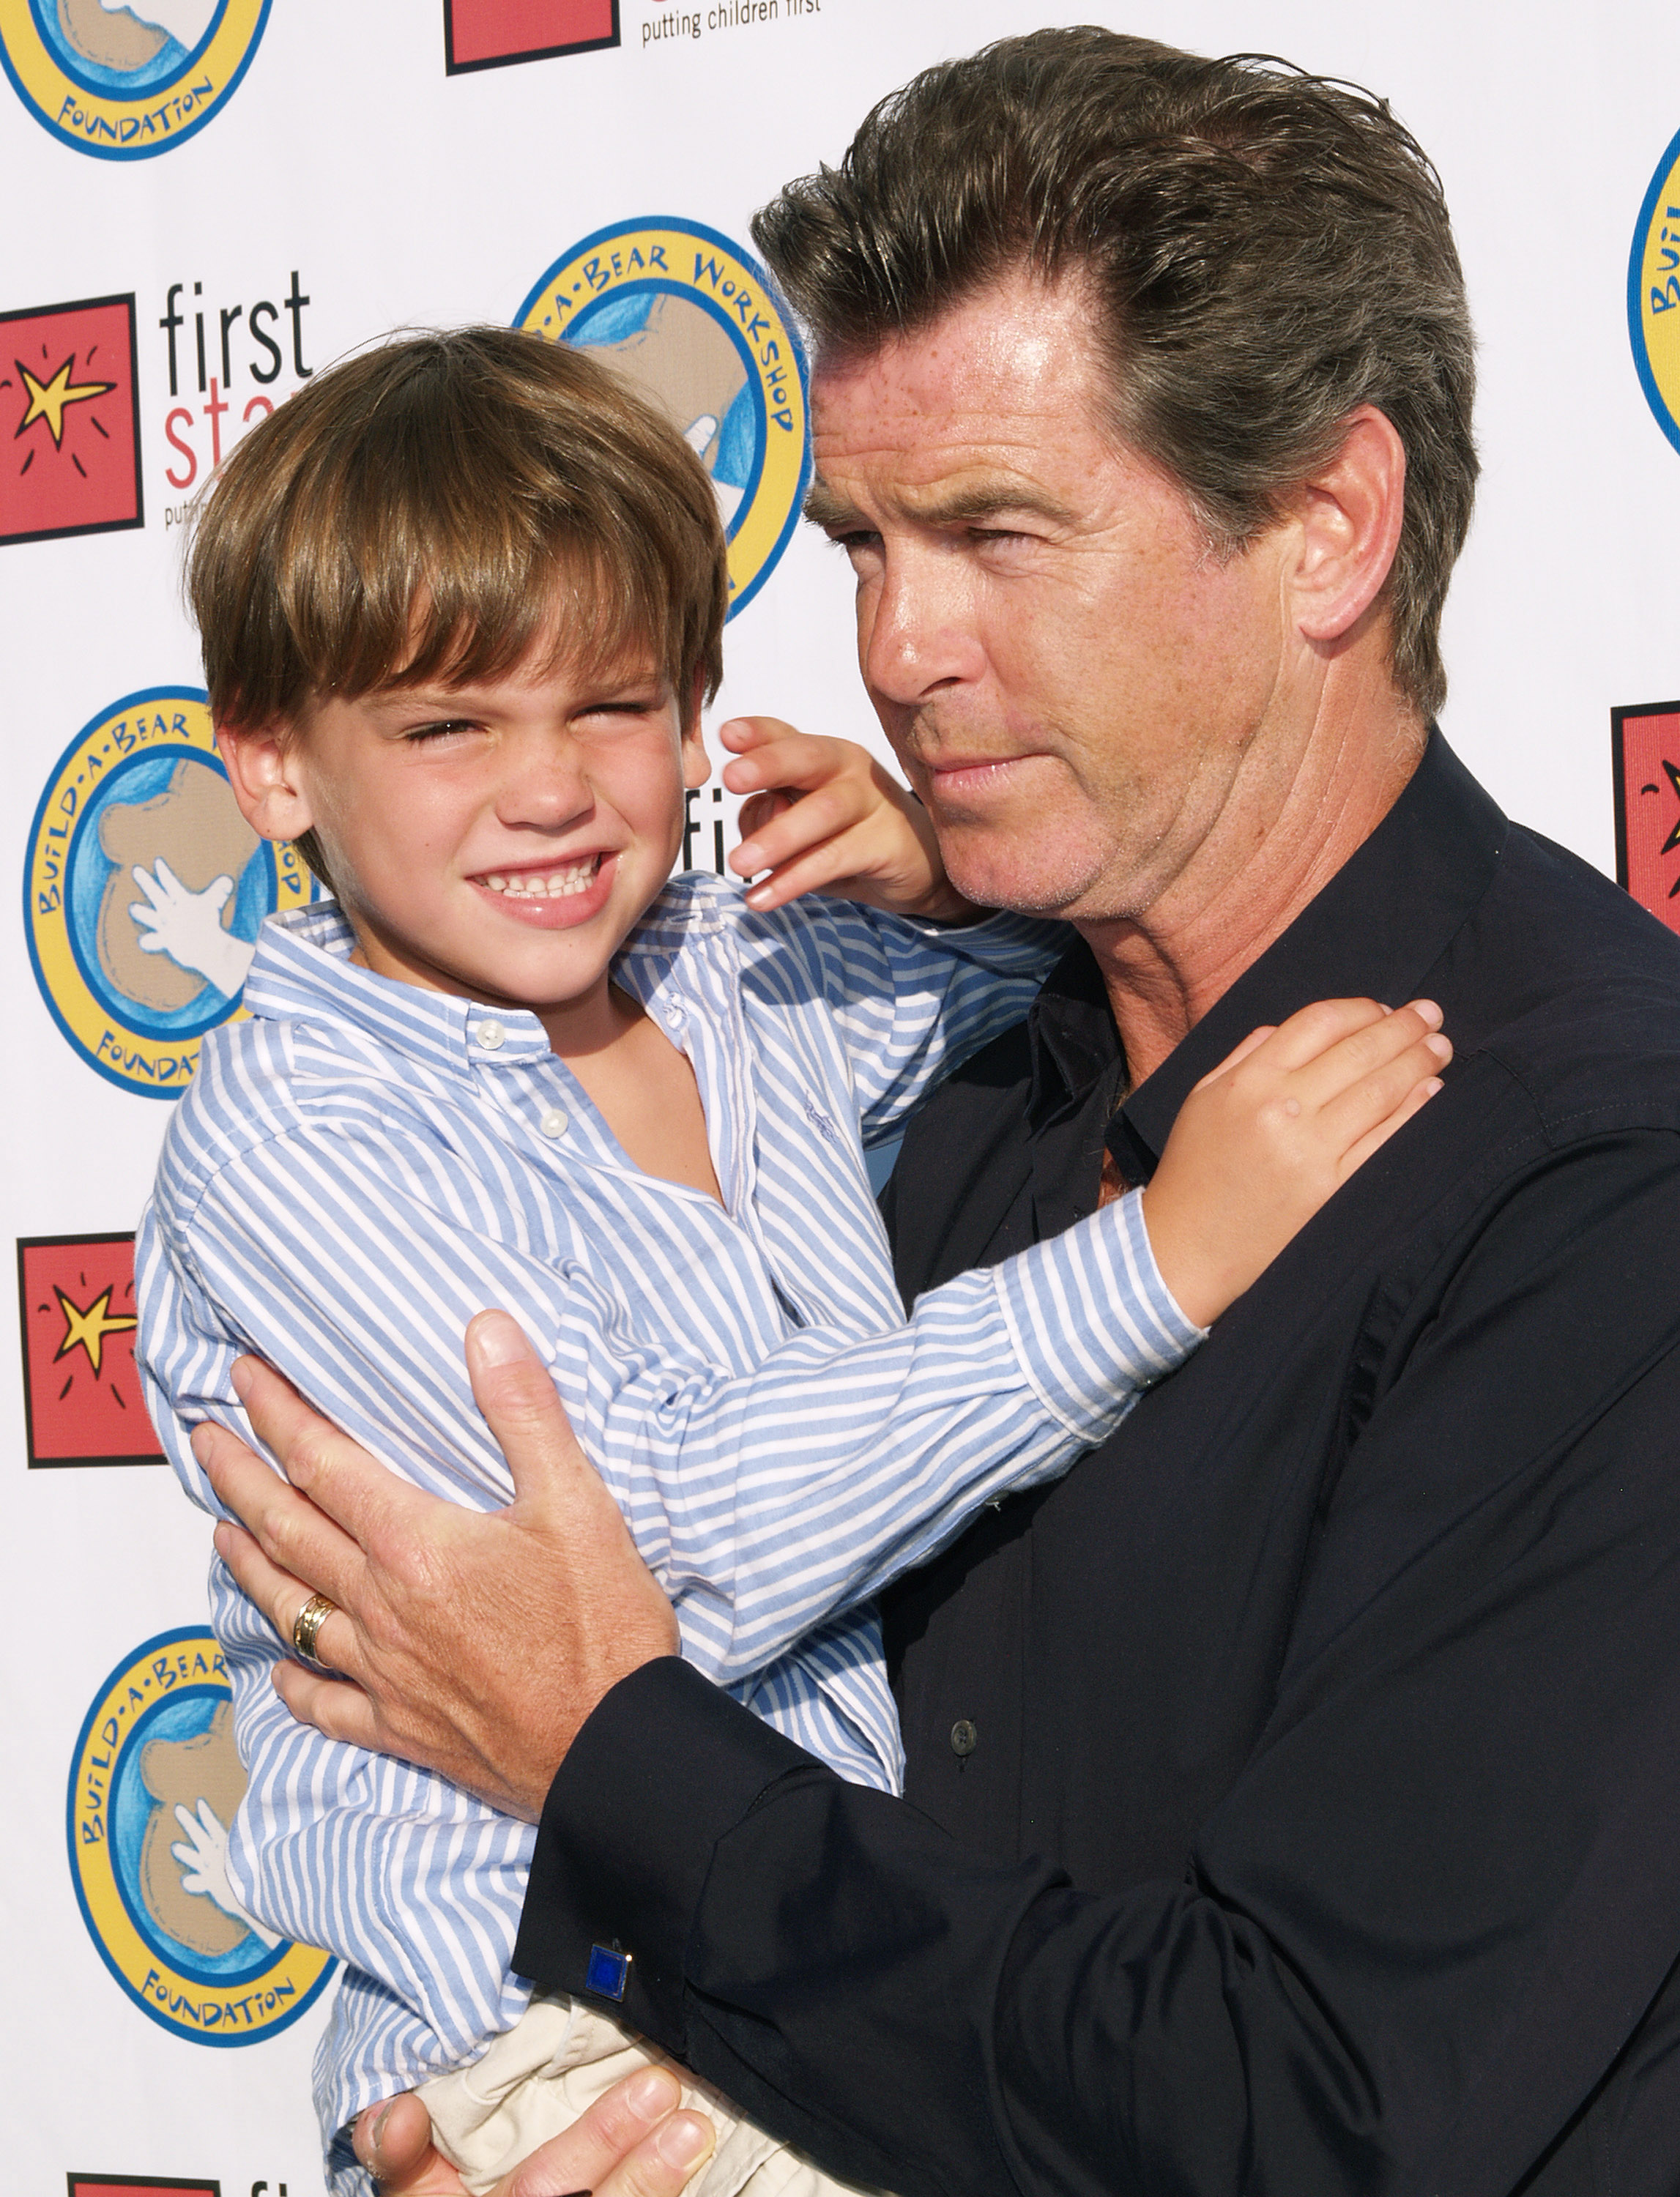 Pierce Brosnan und Paris Brosnan während der First Star's "Celebration for Children's Rights" Benefizveranstaltung in Santa Monica, Kalifornien | Quelle: Getty Images